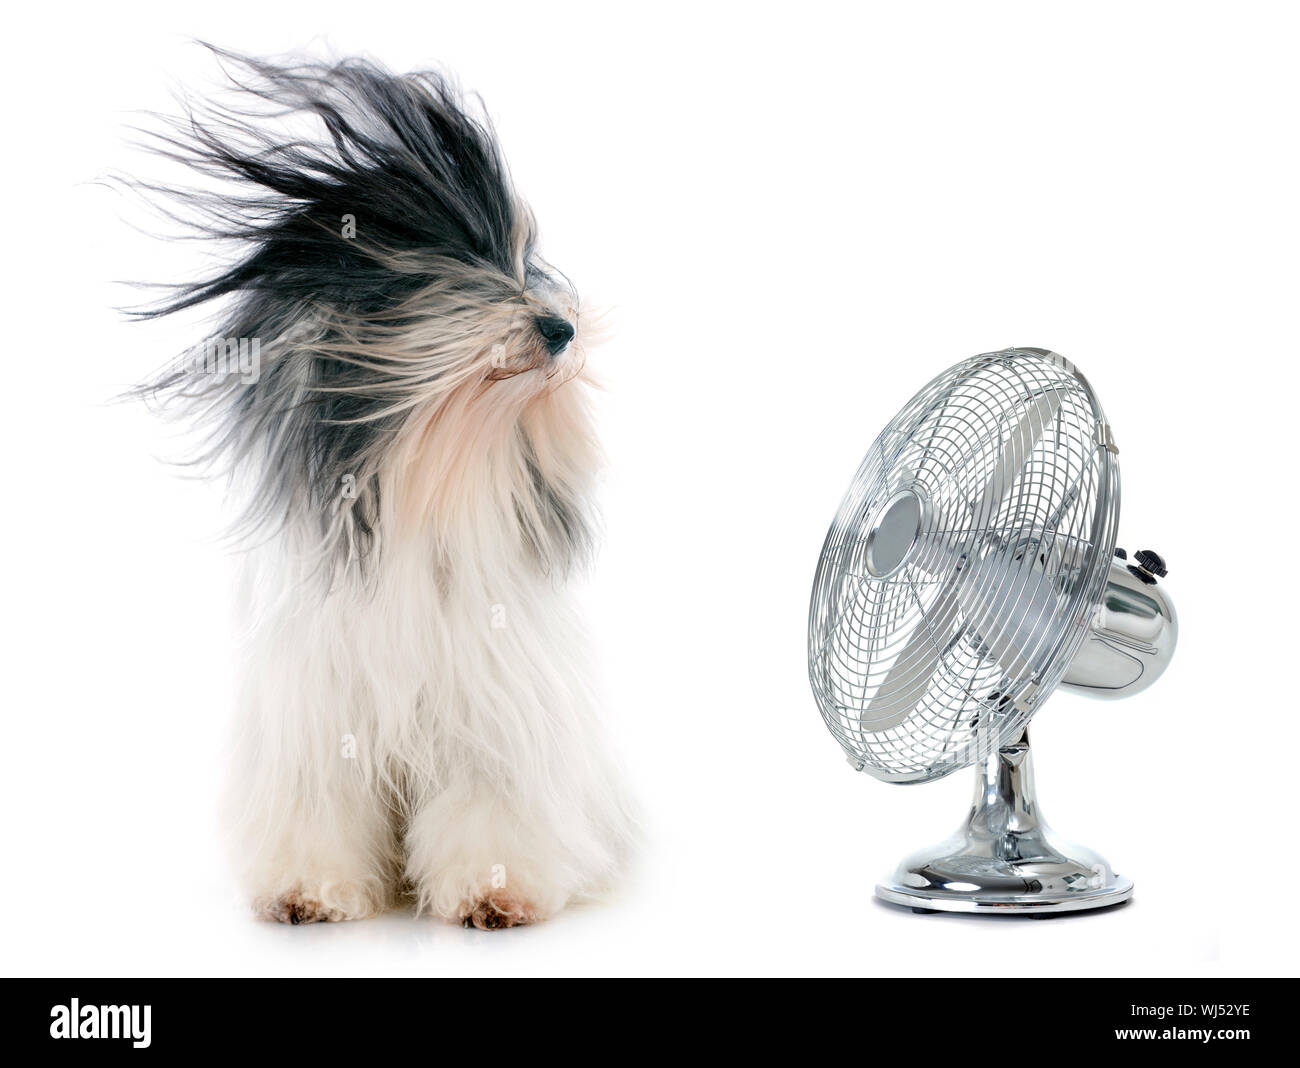 Dog wind fan immagini e fotografie stock ad alta risoluzione - Alamy